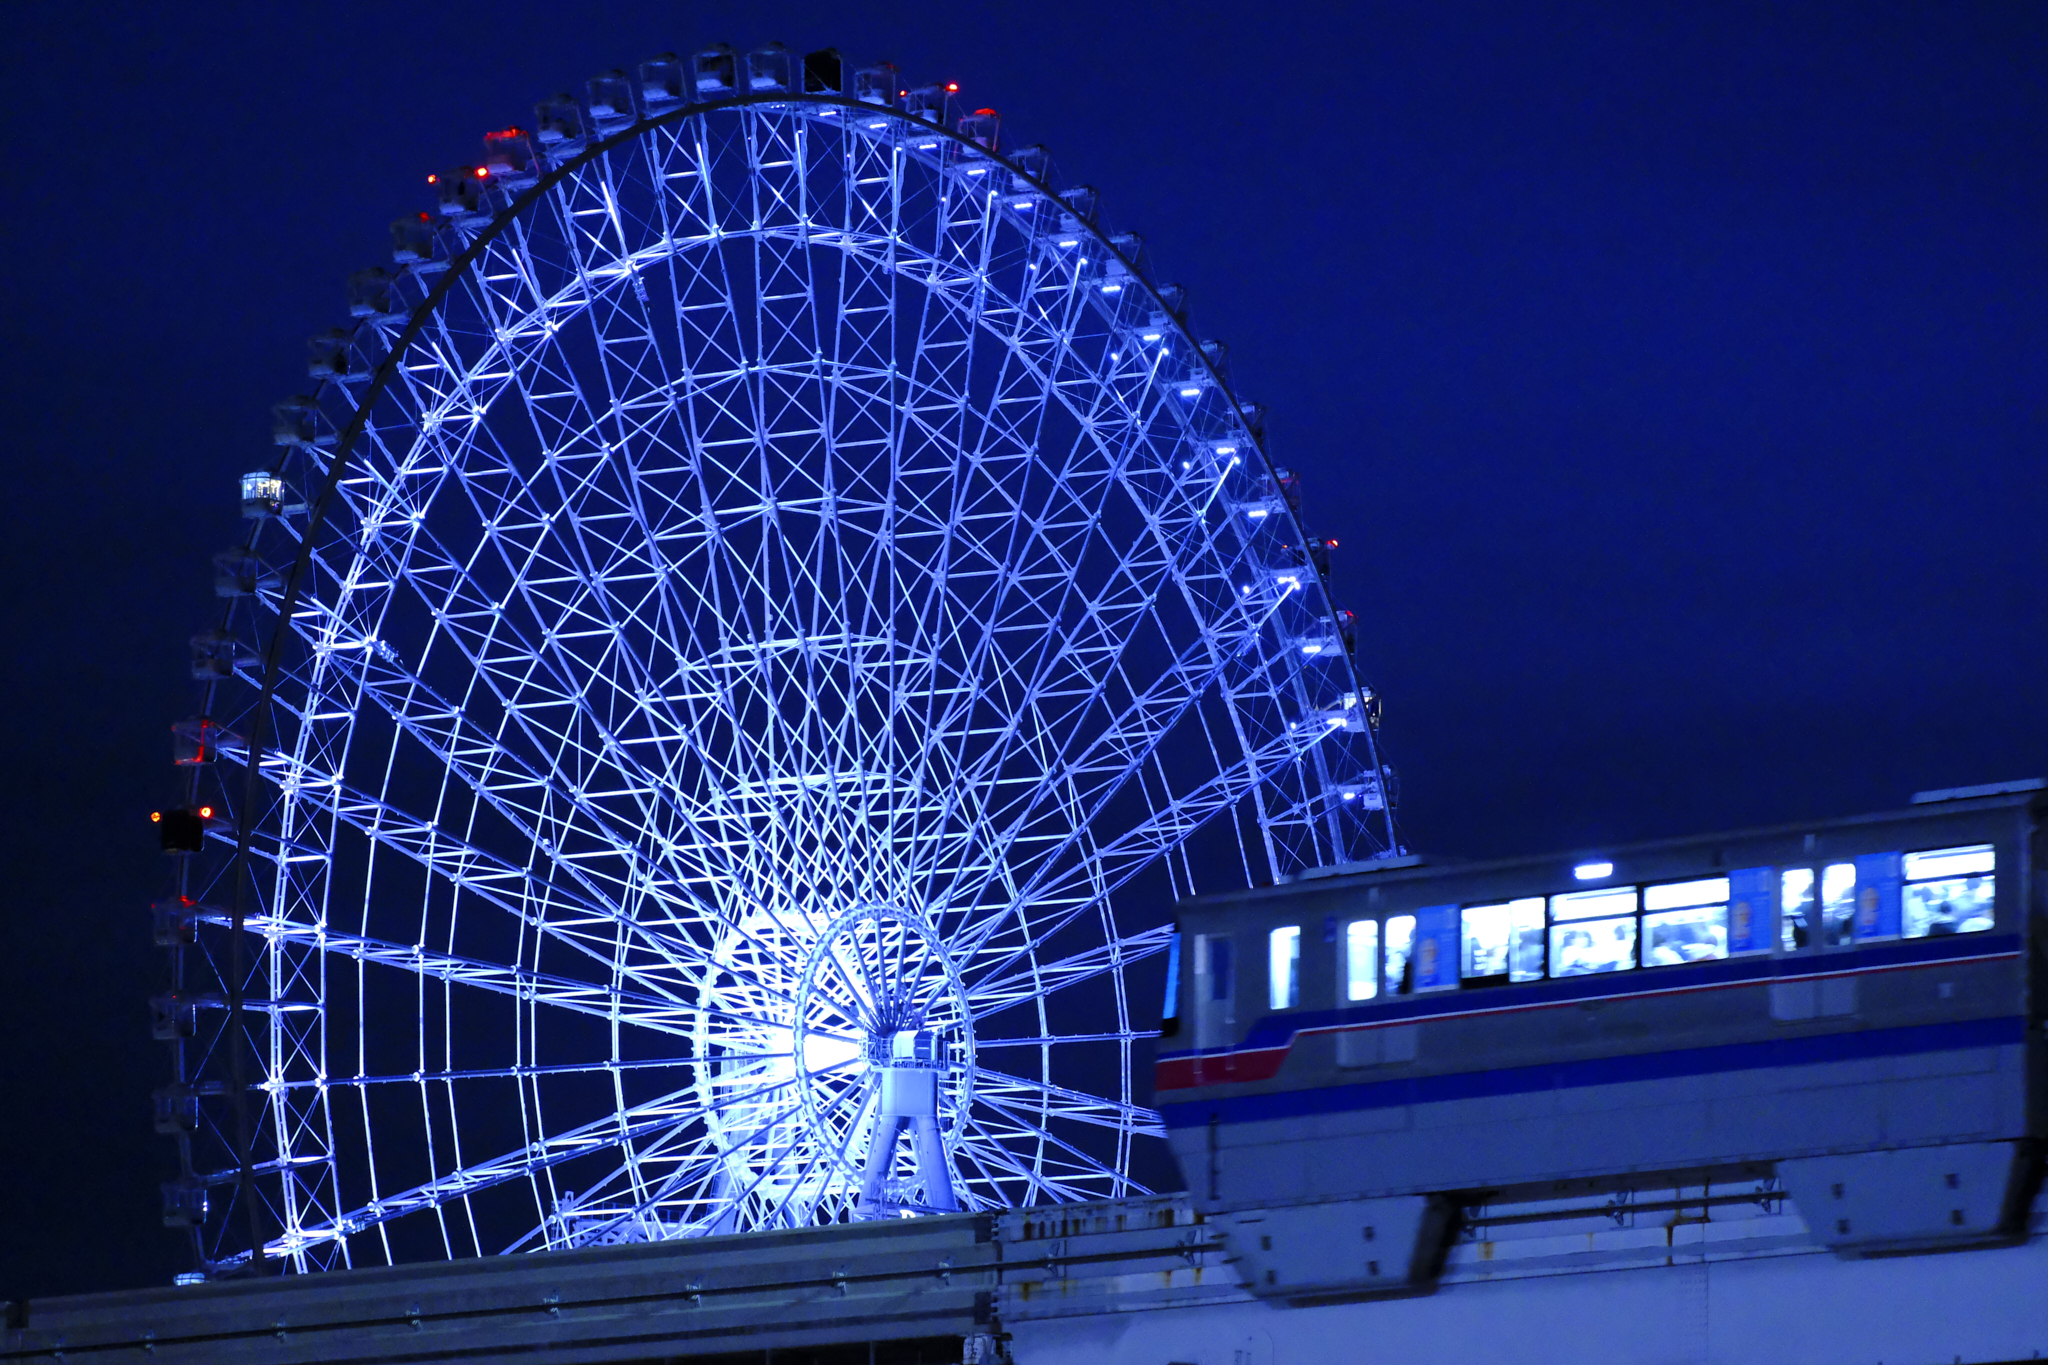 Osaka Monorail and Ferris wheel